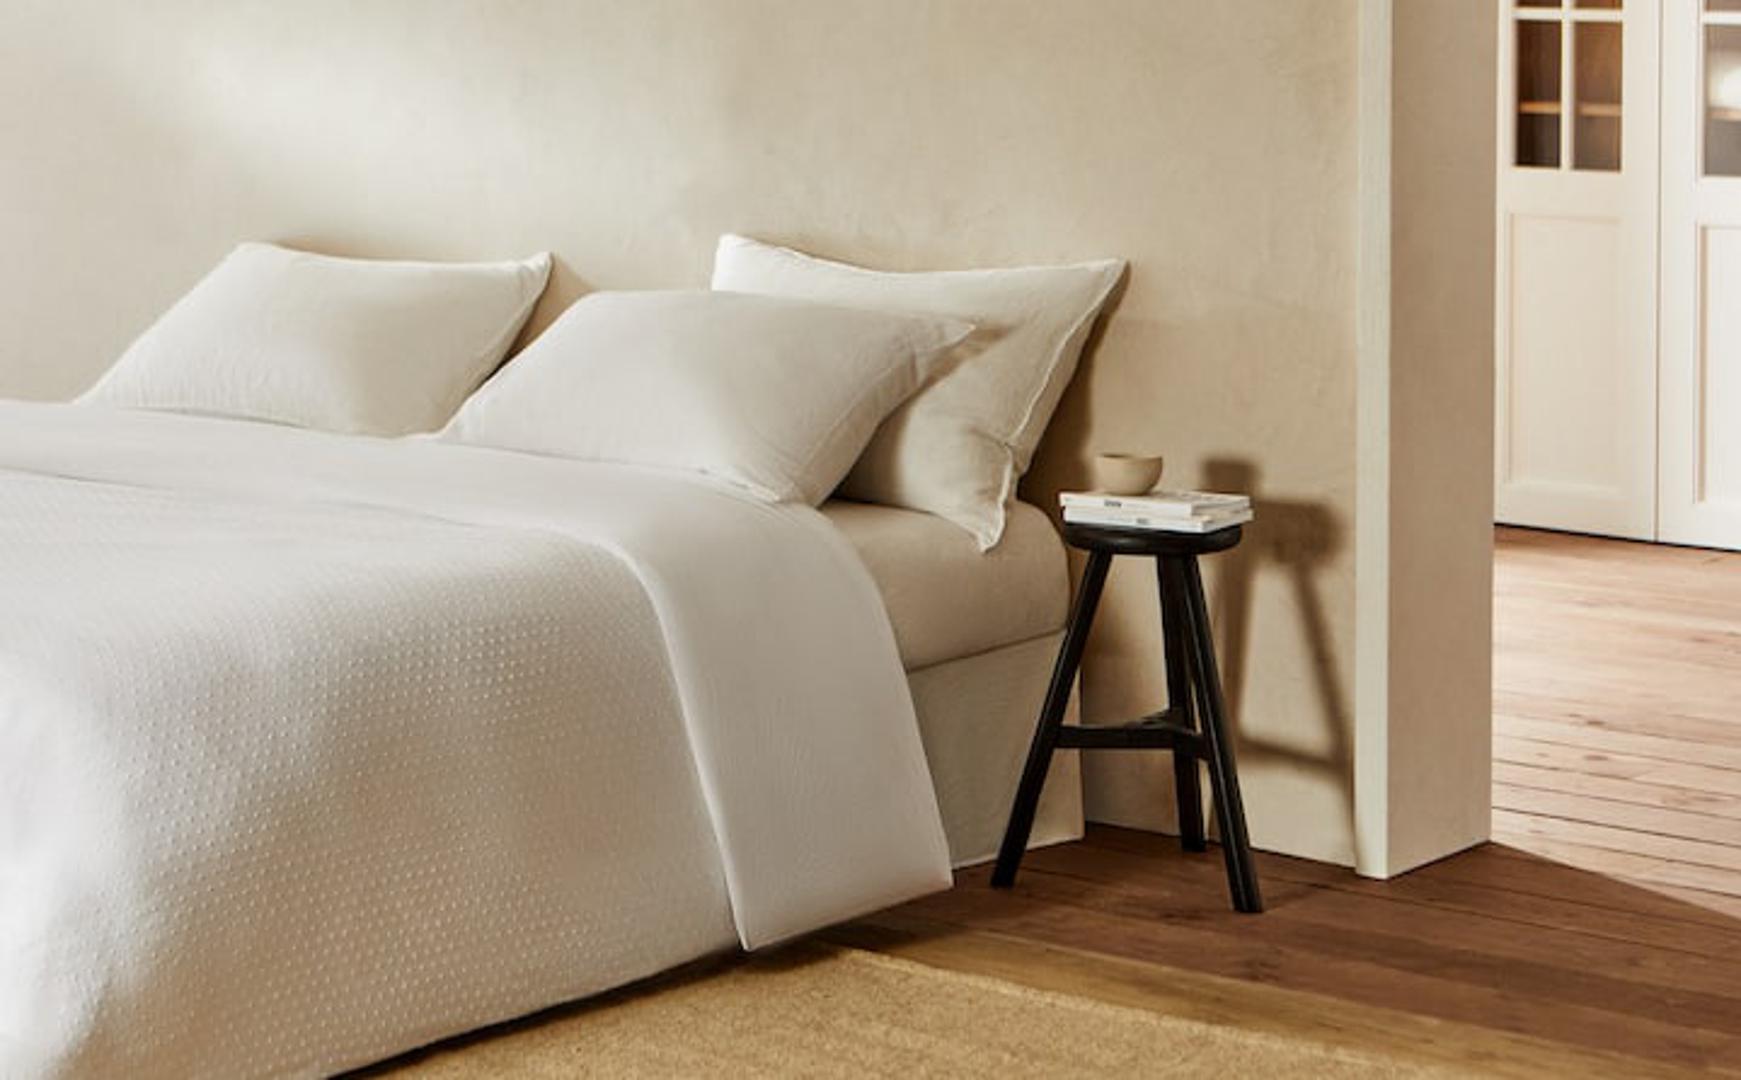 Bijela posetljina super je izbor za jednostavno uređene spavaće sobe